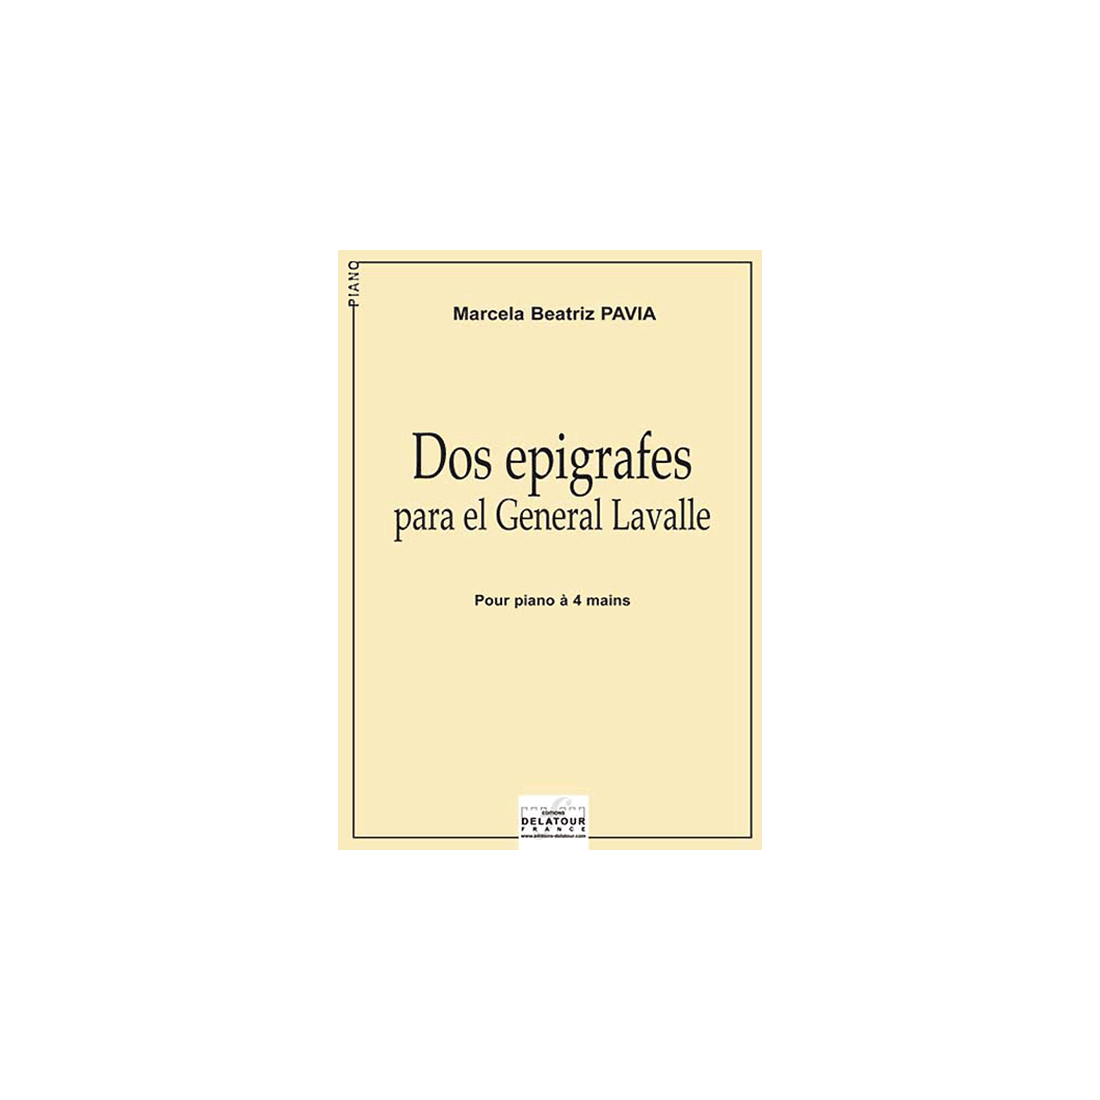 Dos epigrafes para el General Lavalle für Klavier zu 4 Händen